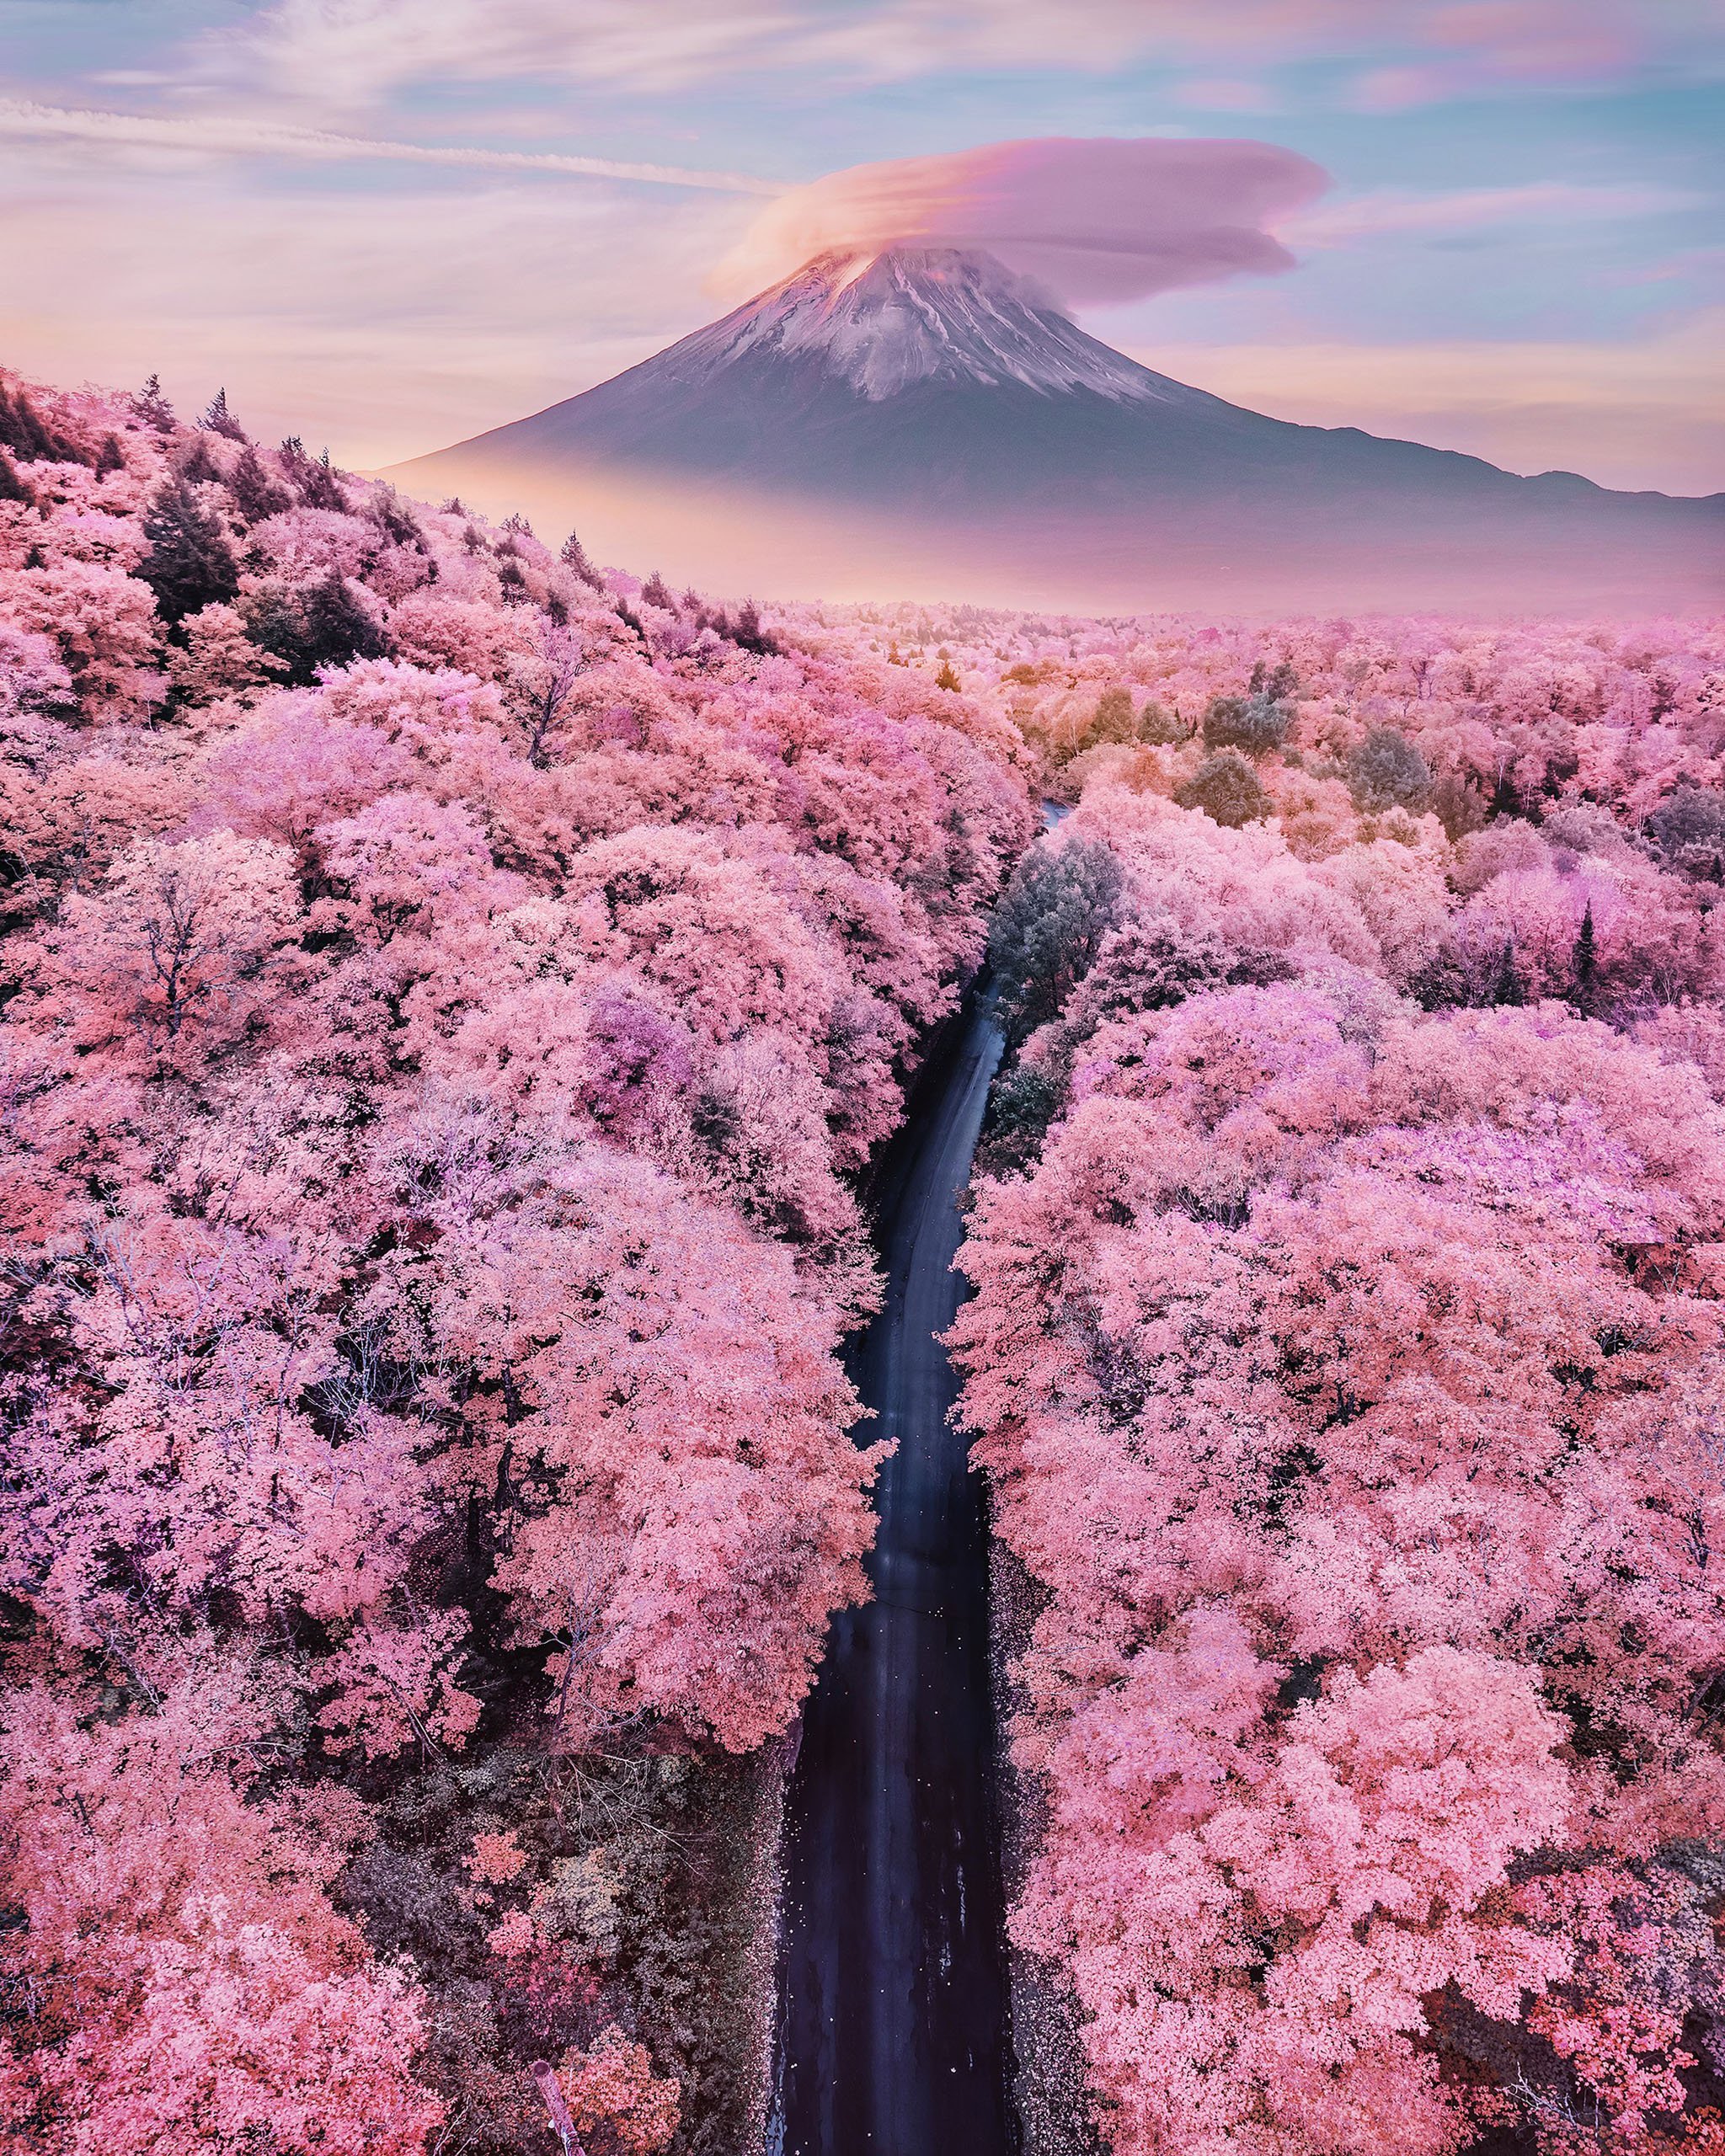 Nhật Bản - nơi hoàn hảo cho những tâm hồn lãng mạn. Sử dụng ảnh lãng mạn của Nhật Bản để lưu giữ những điều đẹp nhất của đất nước này và tạo ra những kỷ niệm lãng mạn đáng nhớ.